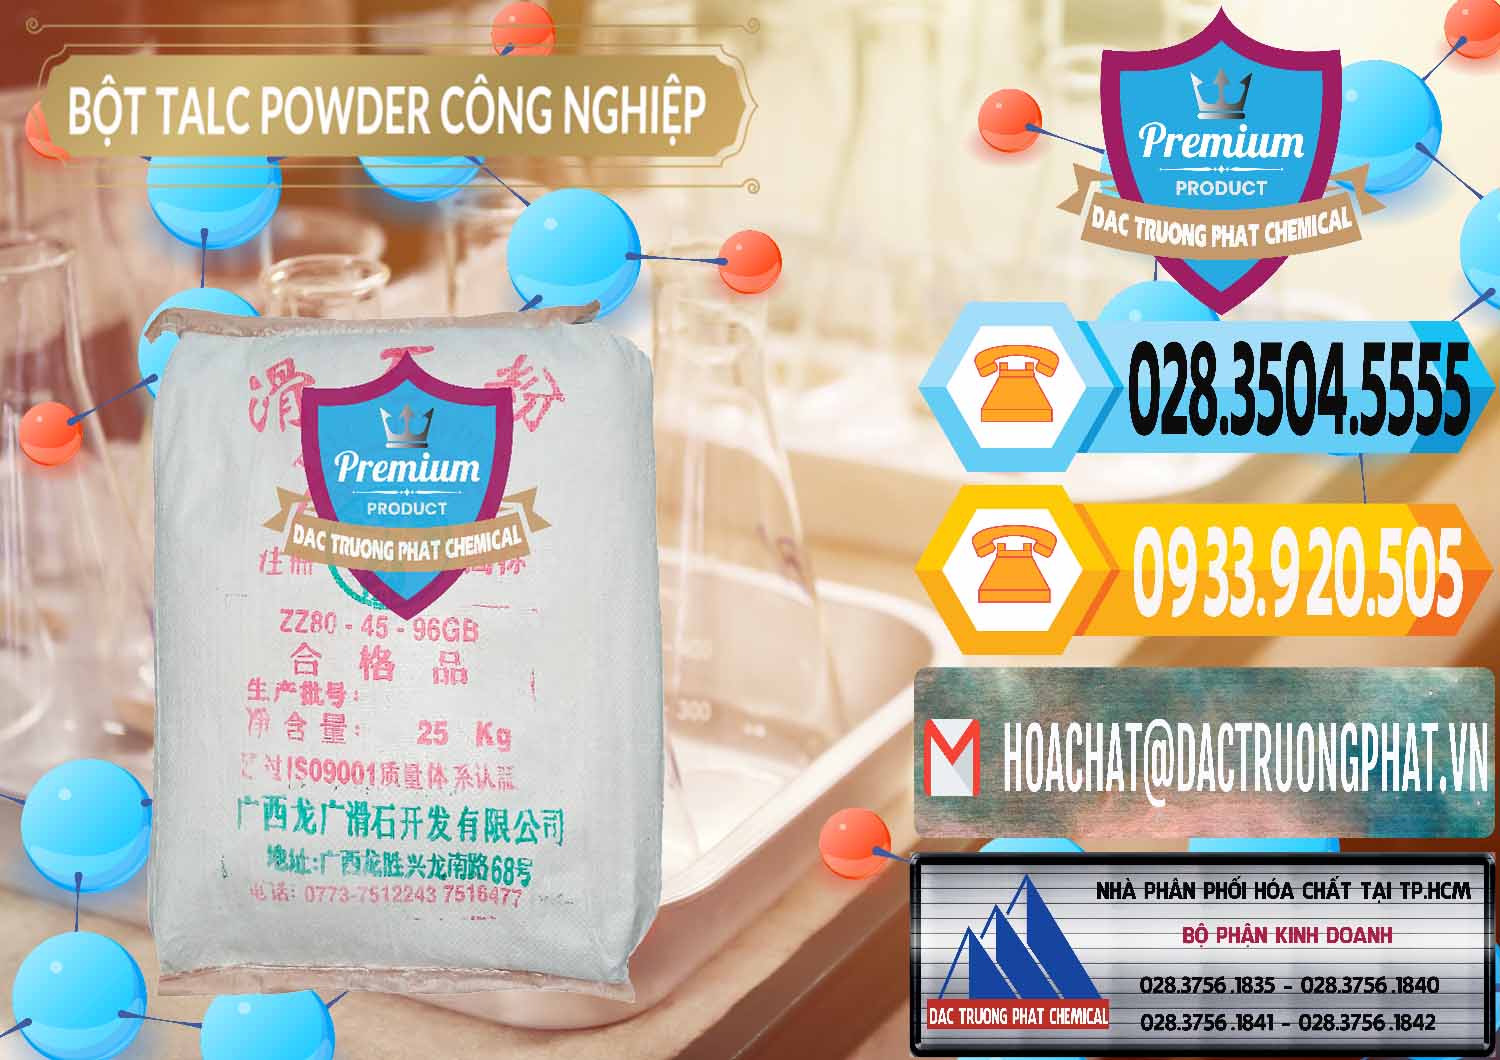 Nơi bán - cung cấp Bột Talc Powder Công Nghiệp Trung Quốc China - 0037 - Công ty chuyên phân phối - bán hóa chất tại TP.HCM - hoachattayrua.net